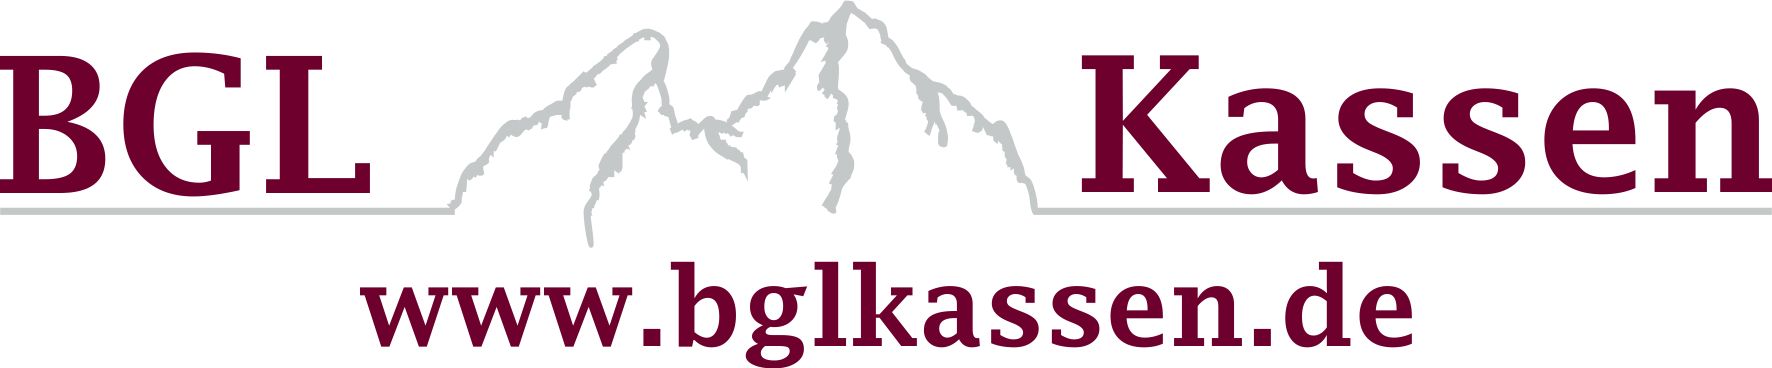 logokassen